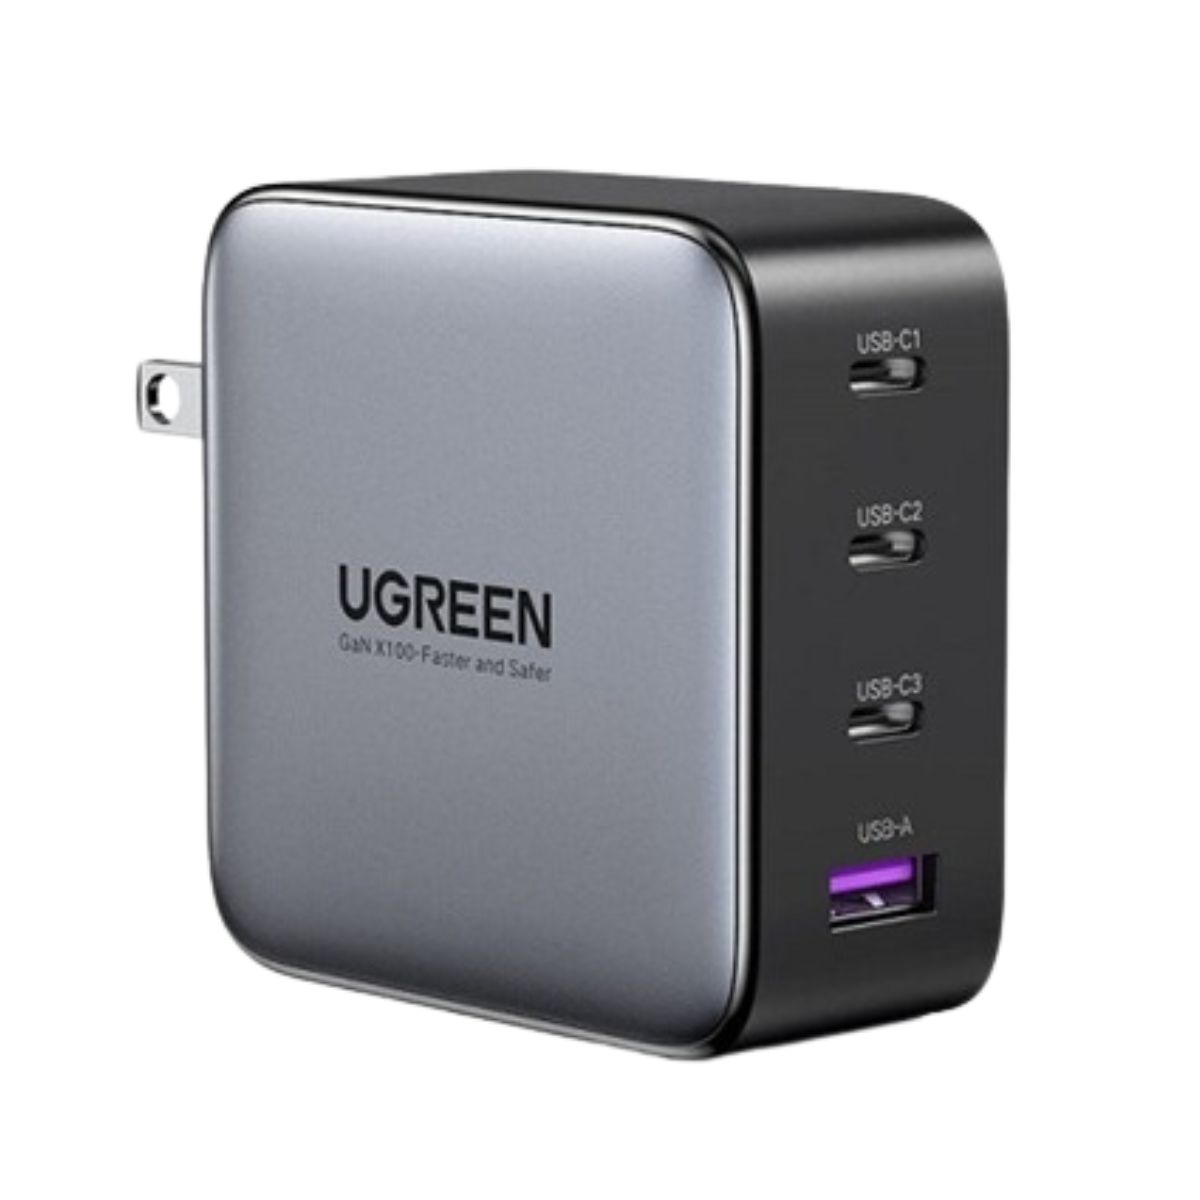  Bộ sạc nhanh 4 cổng PD Ugreen 40737 CD226 công suất 100W, 3 cổng USB Type-C và 1 cổng USB Type-A